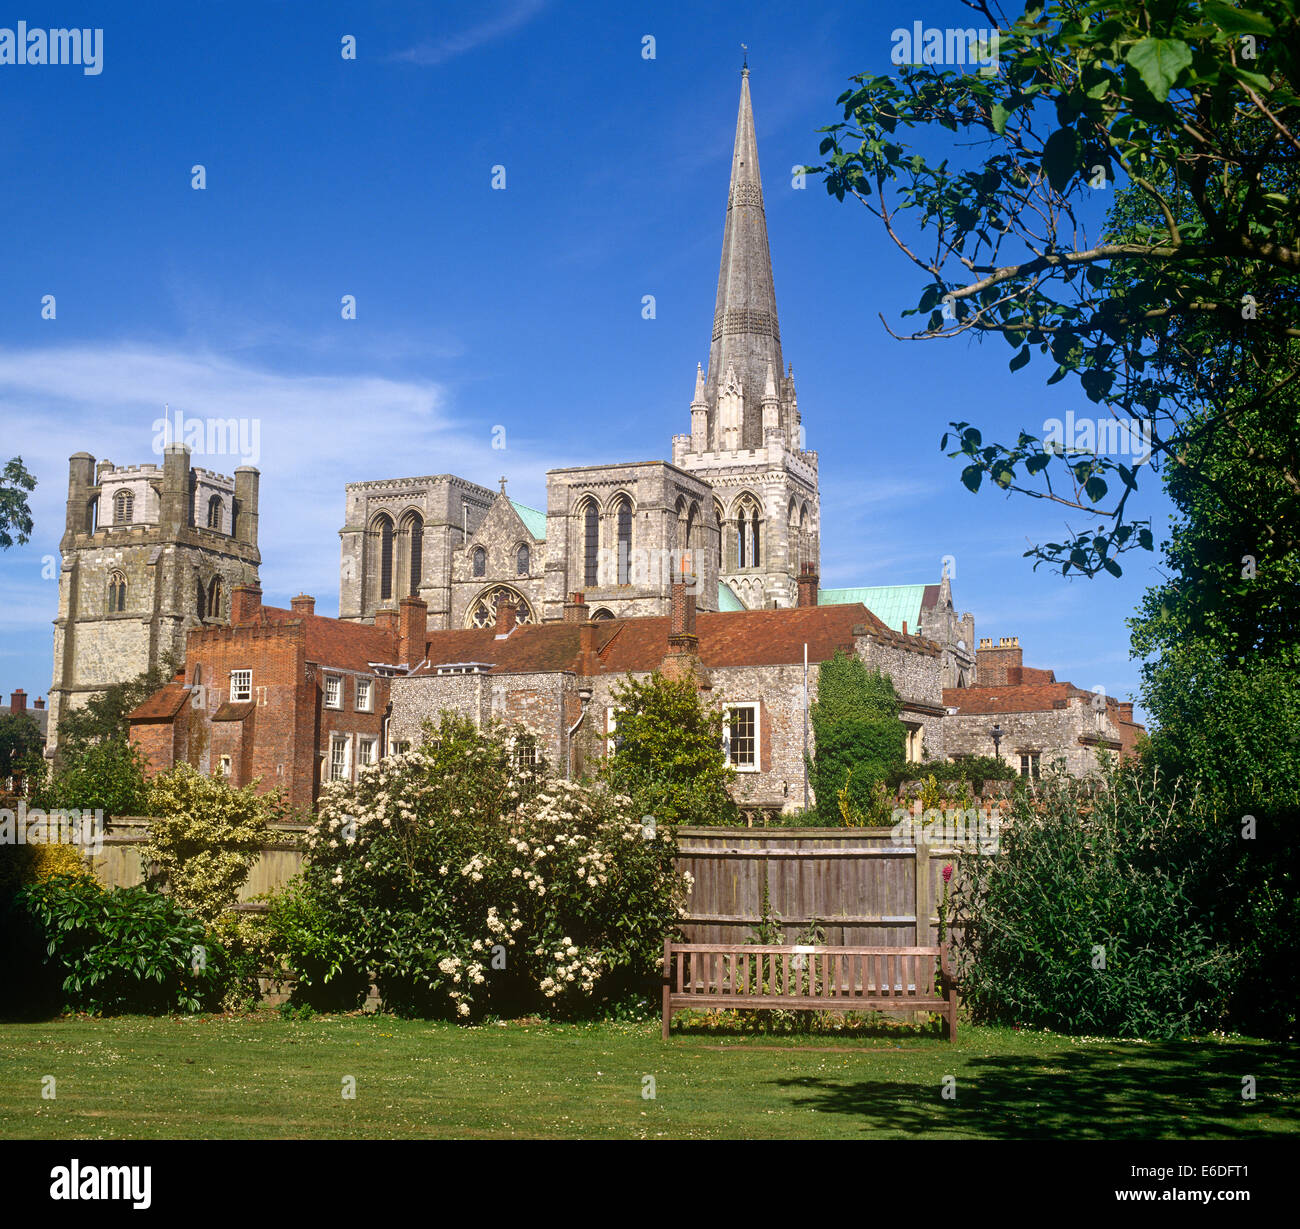 La cathédrale de Chichester, Sussex, UK Banque D'Images